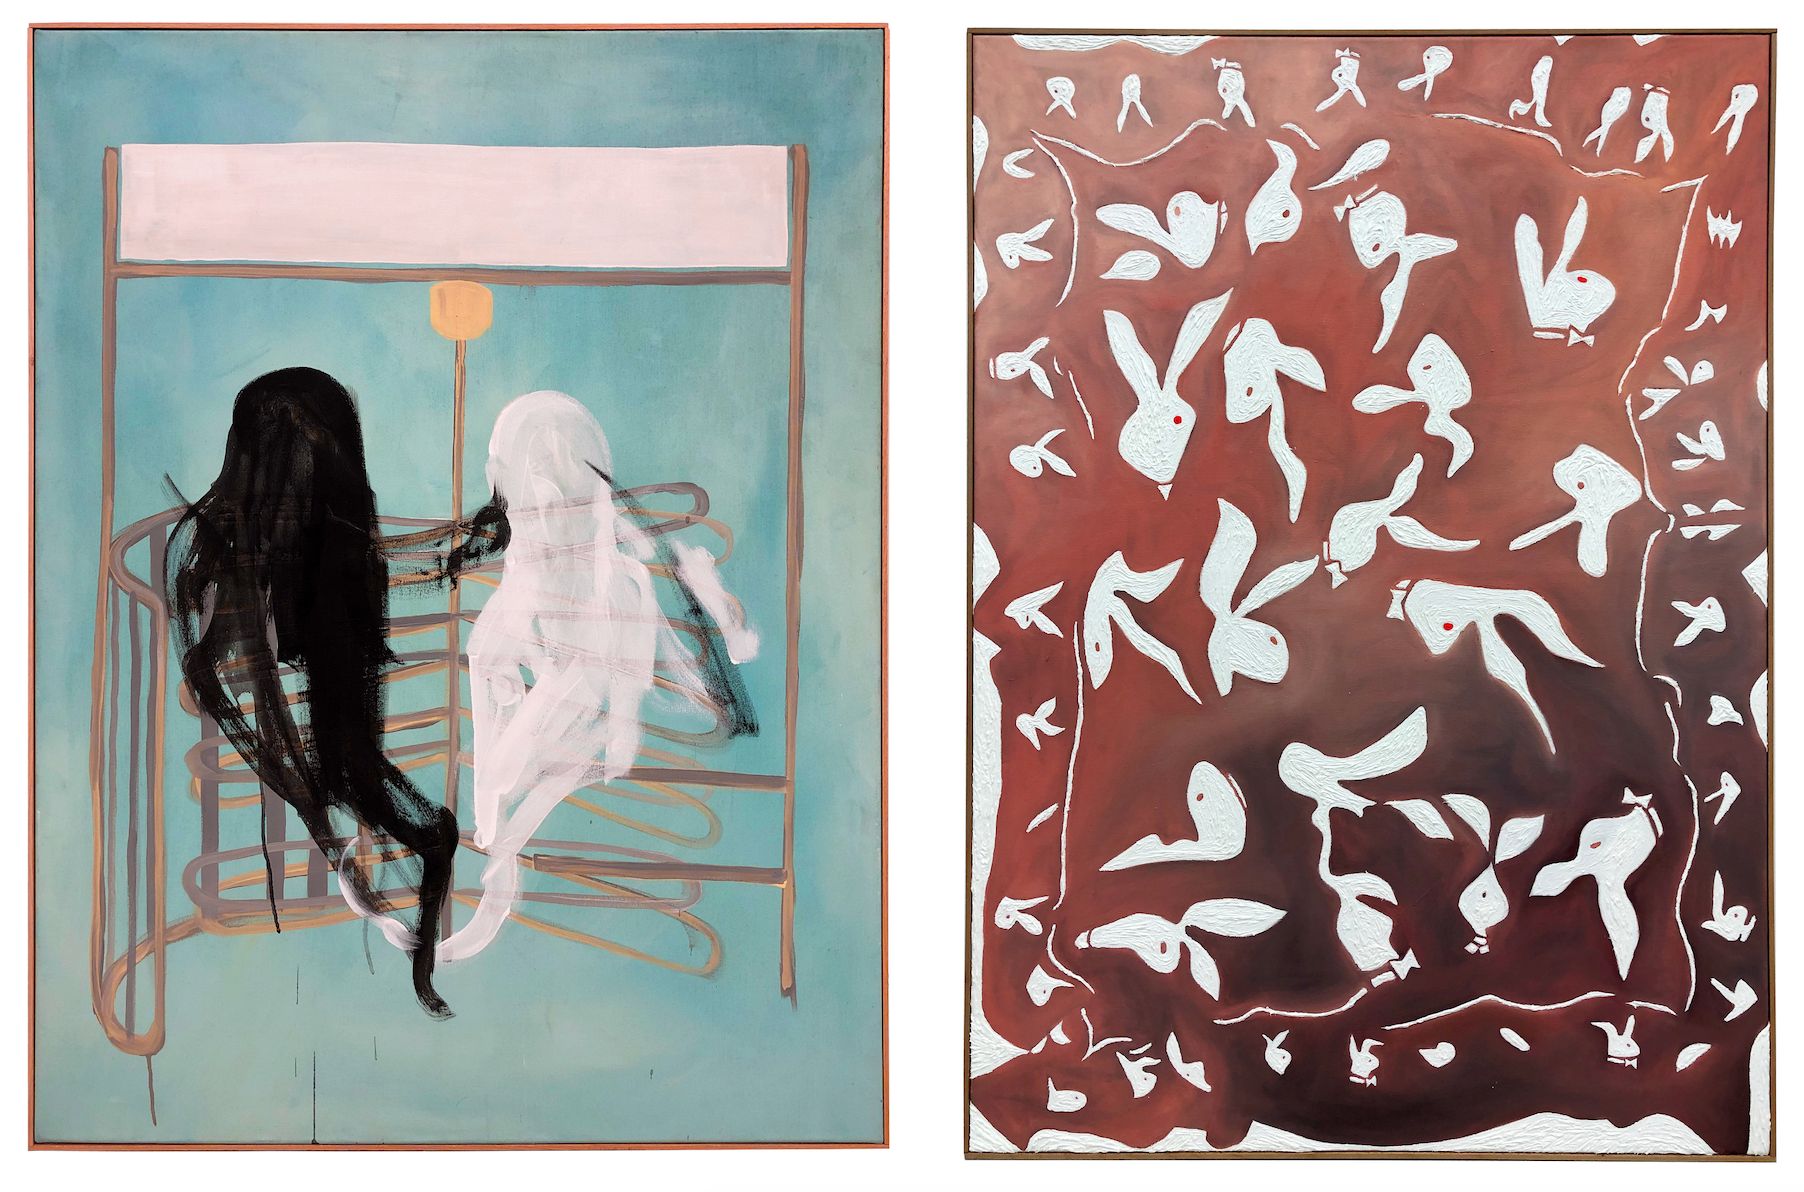 Zwei Malereien. Links: Anna Ley & Valerie von Könemann, zu sehen sind zwei Geister. Rechts: Lena Schramm, zu sehen sind Hasen mit roten Augen.